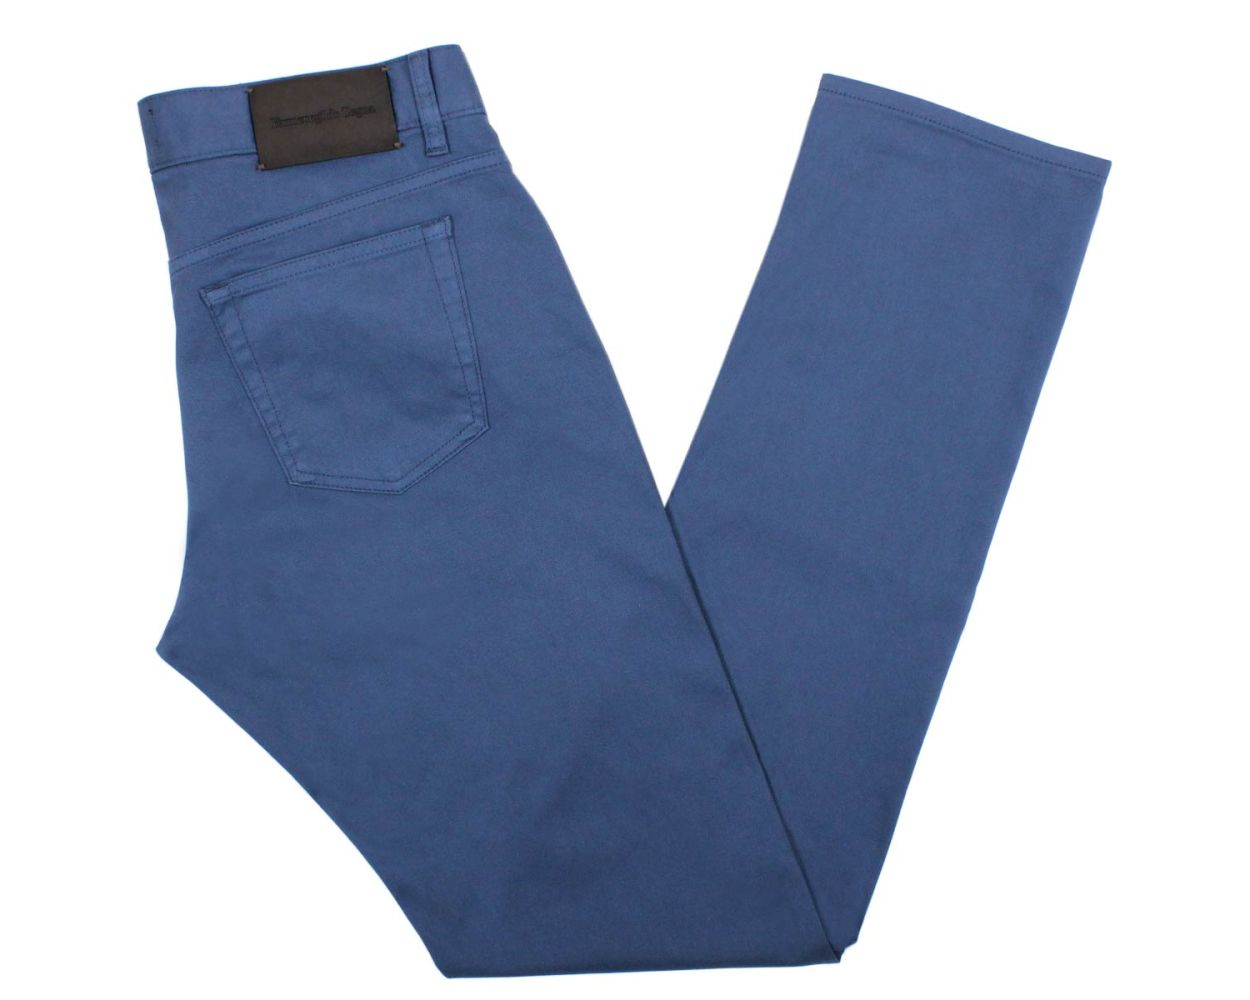 Ermenegildo Zegna Slate Blue Cotton Jeans